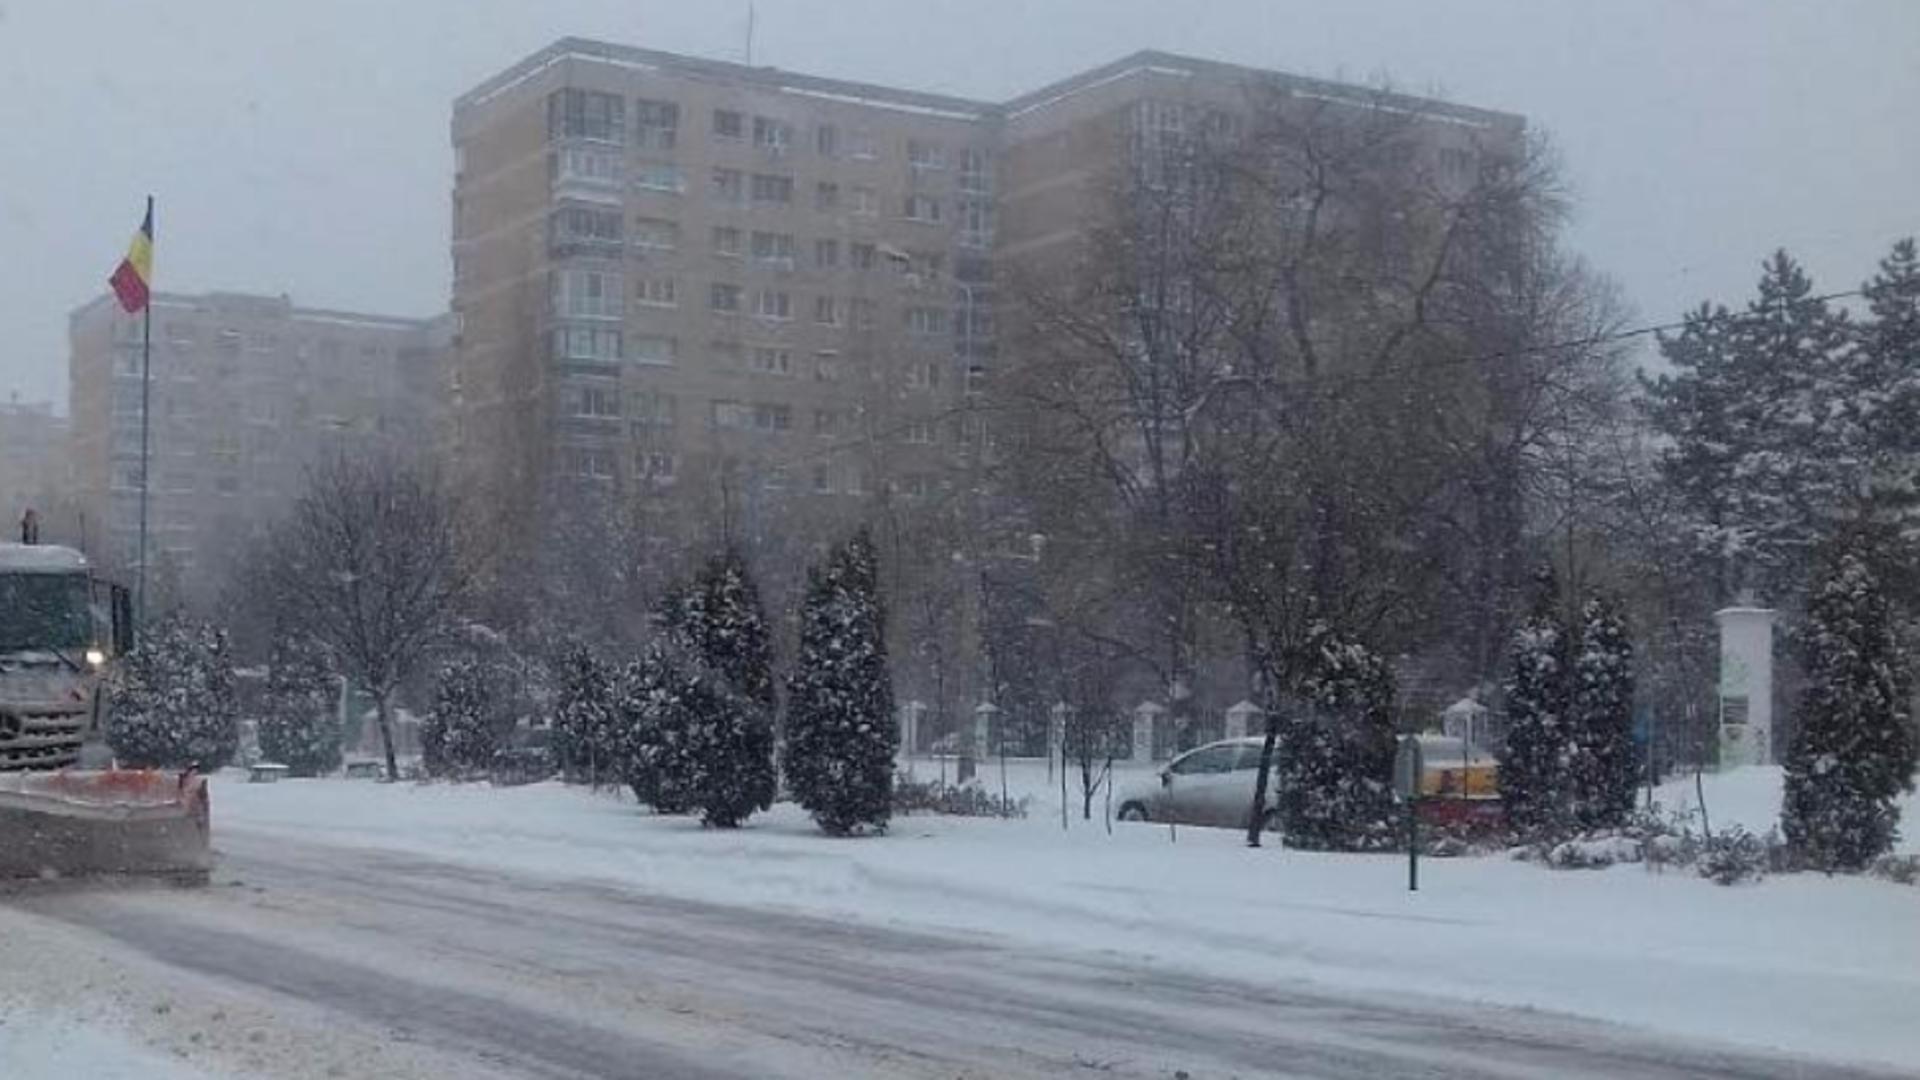 Vin ninsorile în București! Meteorologii anunță FRIG, ploi și zăpadă în următoarele zile - Prognoza specială ANM